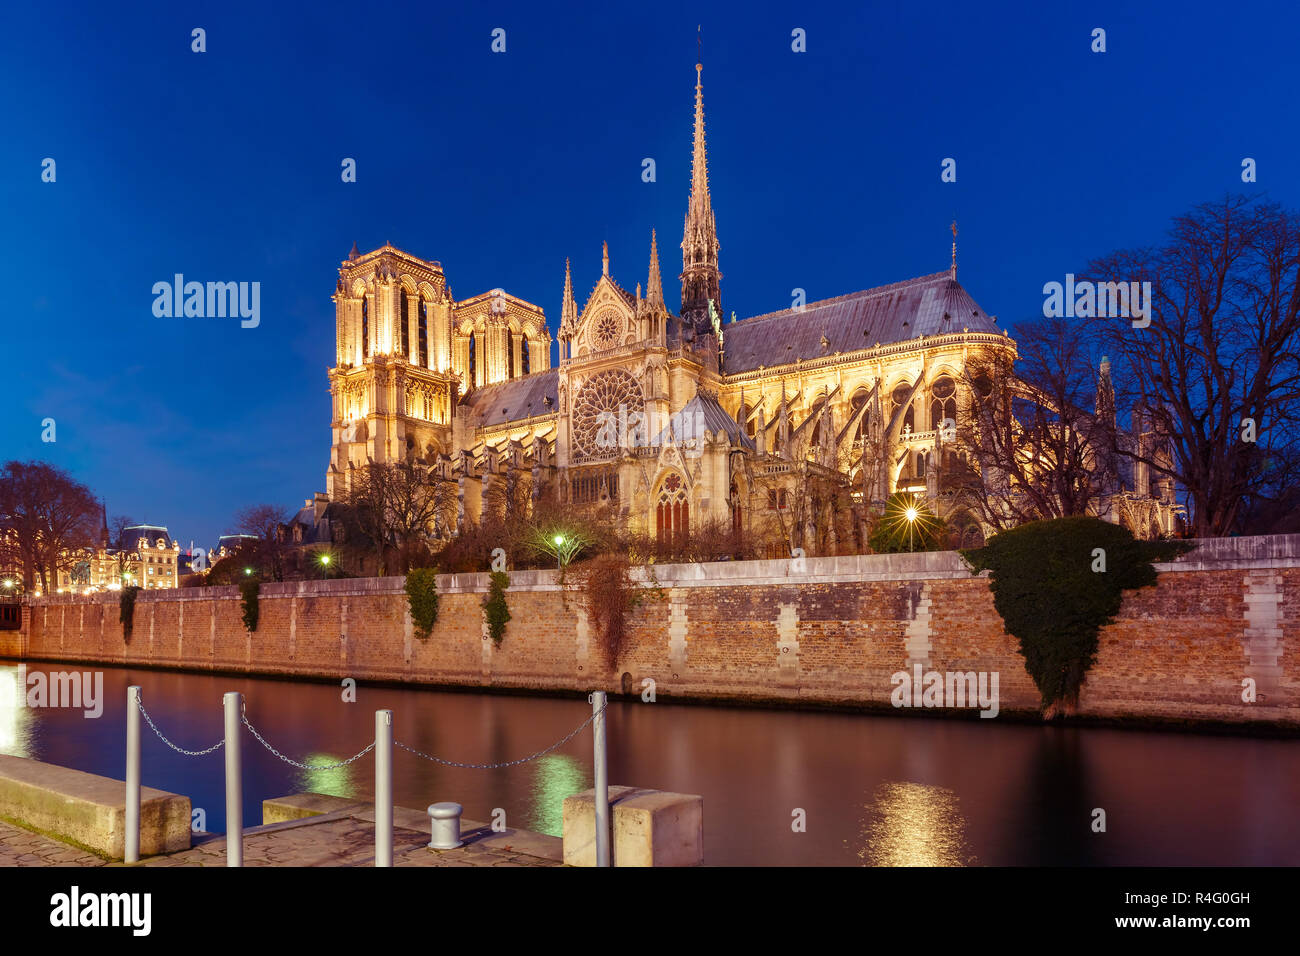 Cathédrale Notre Dame de Paris la nuit, France Banque D'Images